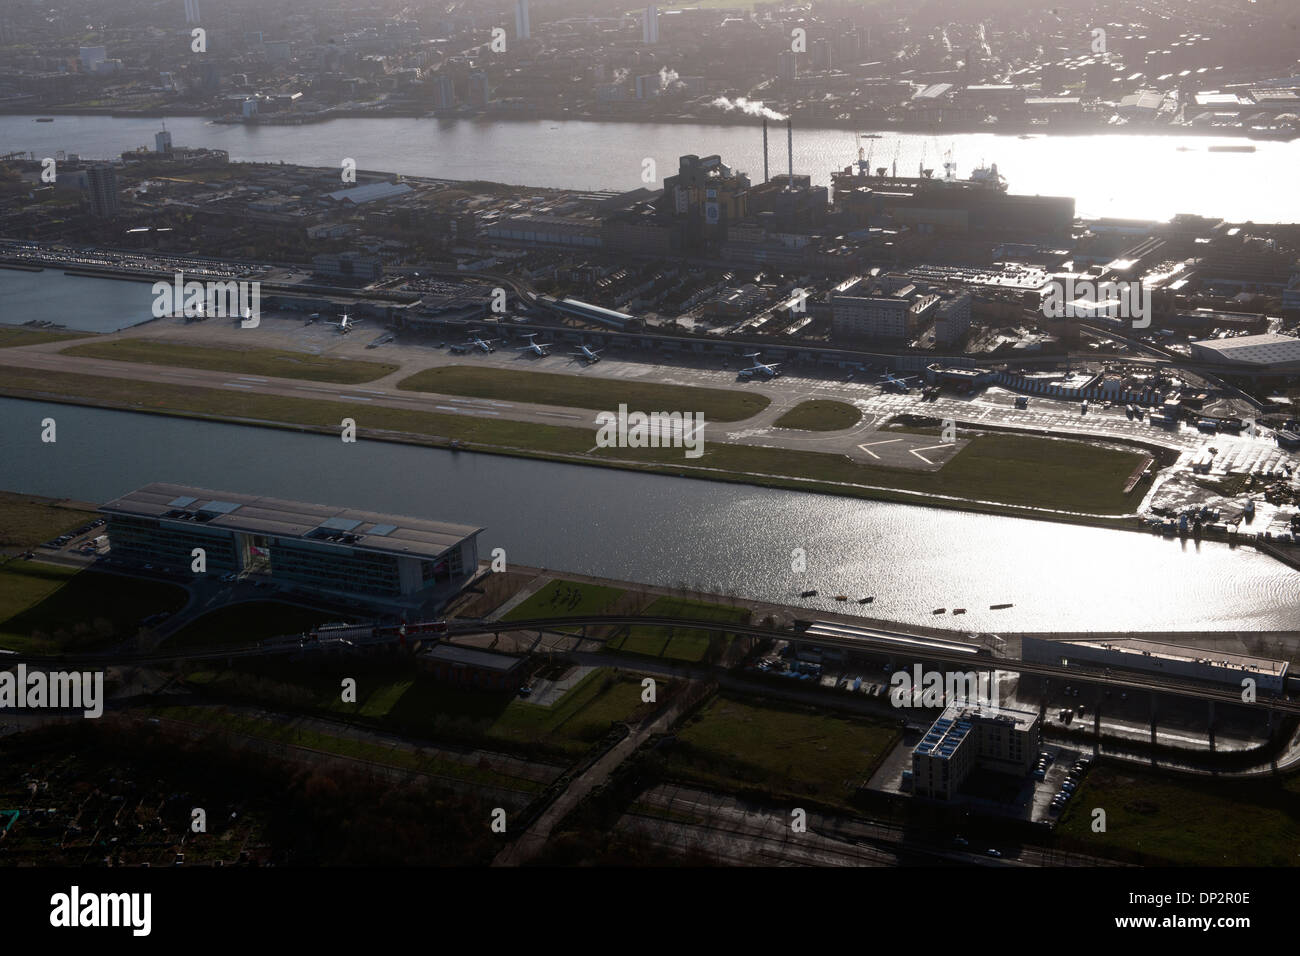 L'aéroport de London City à partir de l'air. Banque D'Images